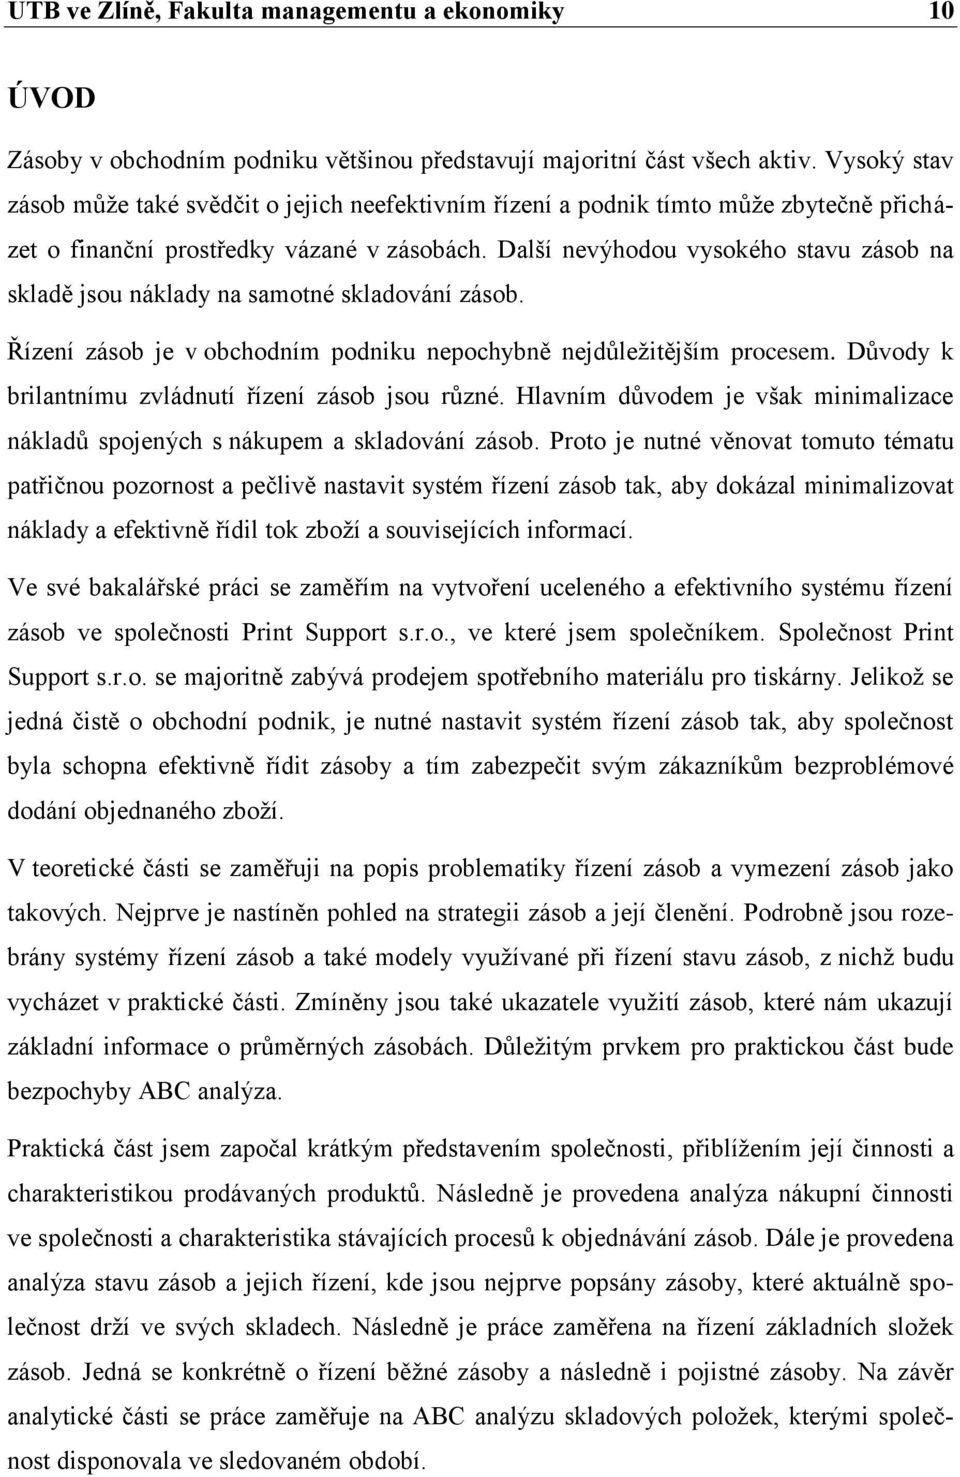 Návrh systému řízení zásob ve společnosti Print support s.r.o. Miroslav  Kadlček - PDF Stažení zdarma